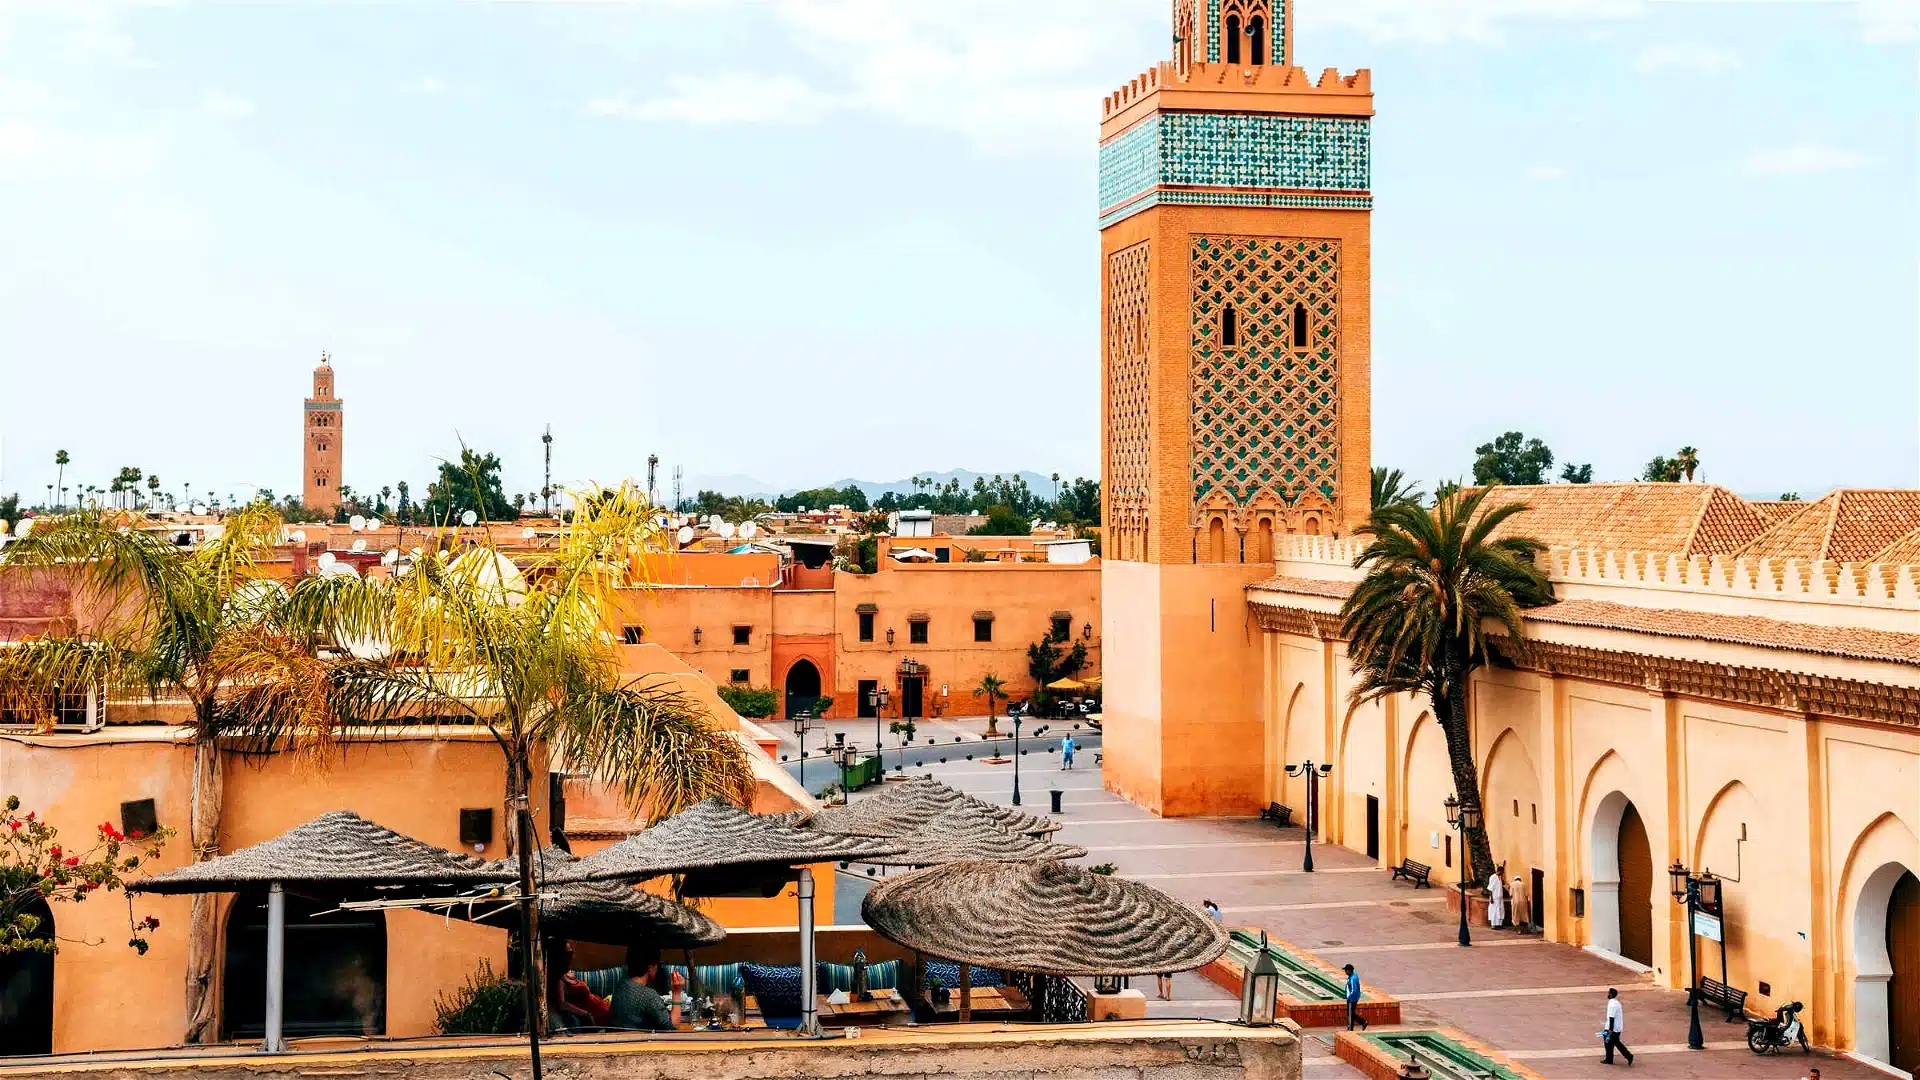 Marrakesh Villa, fundraiser auction items, live auction items